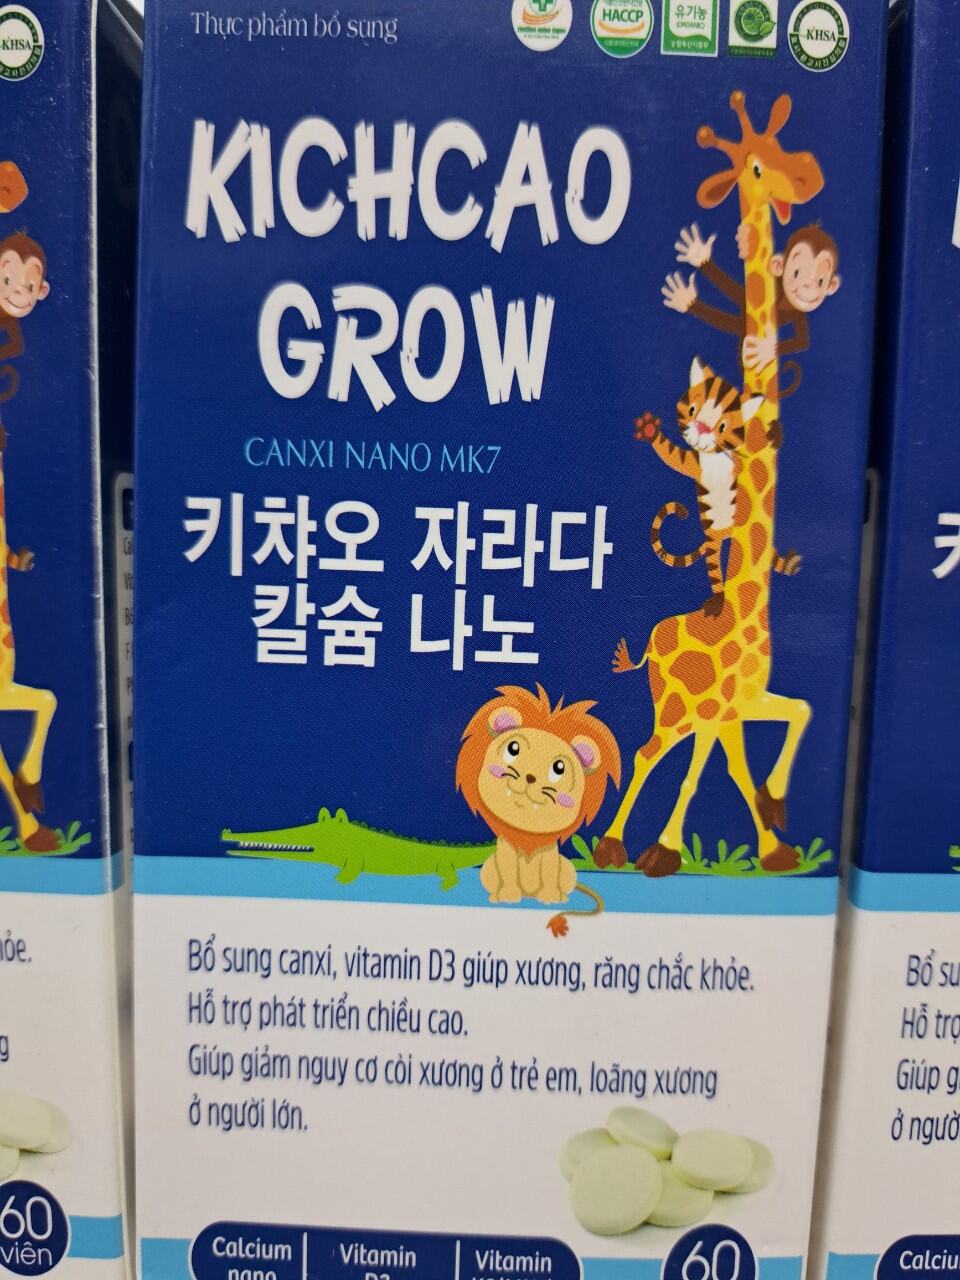 (Bán Chạy) Kẹo Canxi Kichcao Gow tăng chiều cao , bổ sung canxi nano